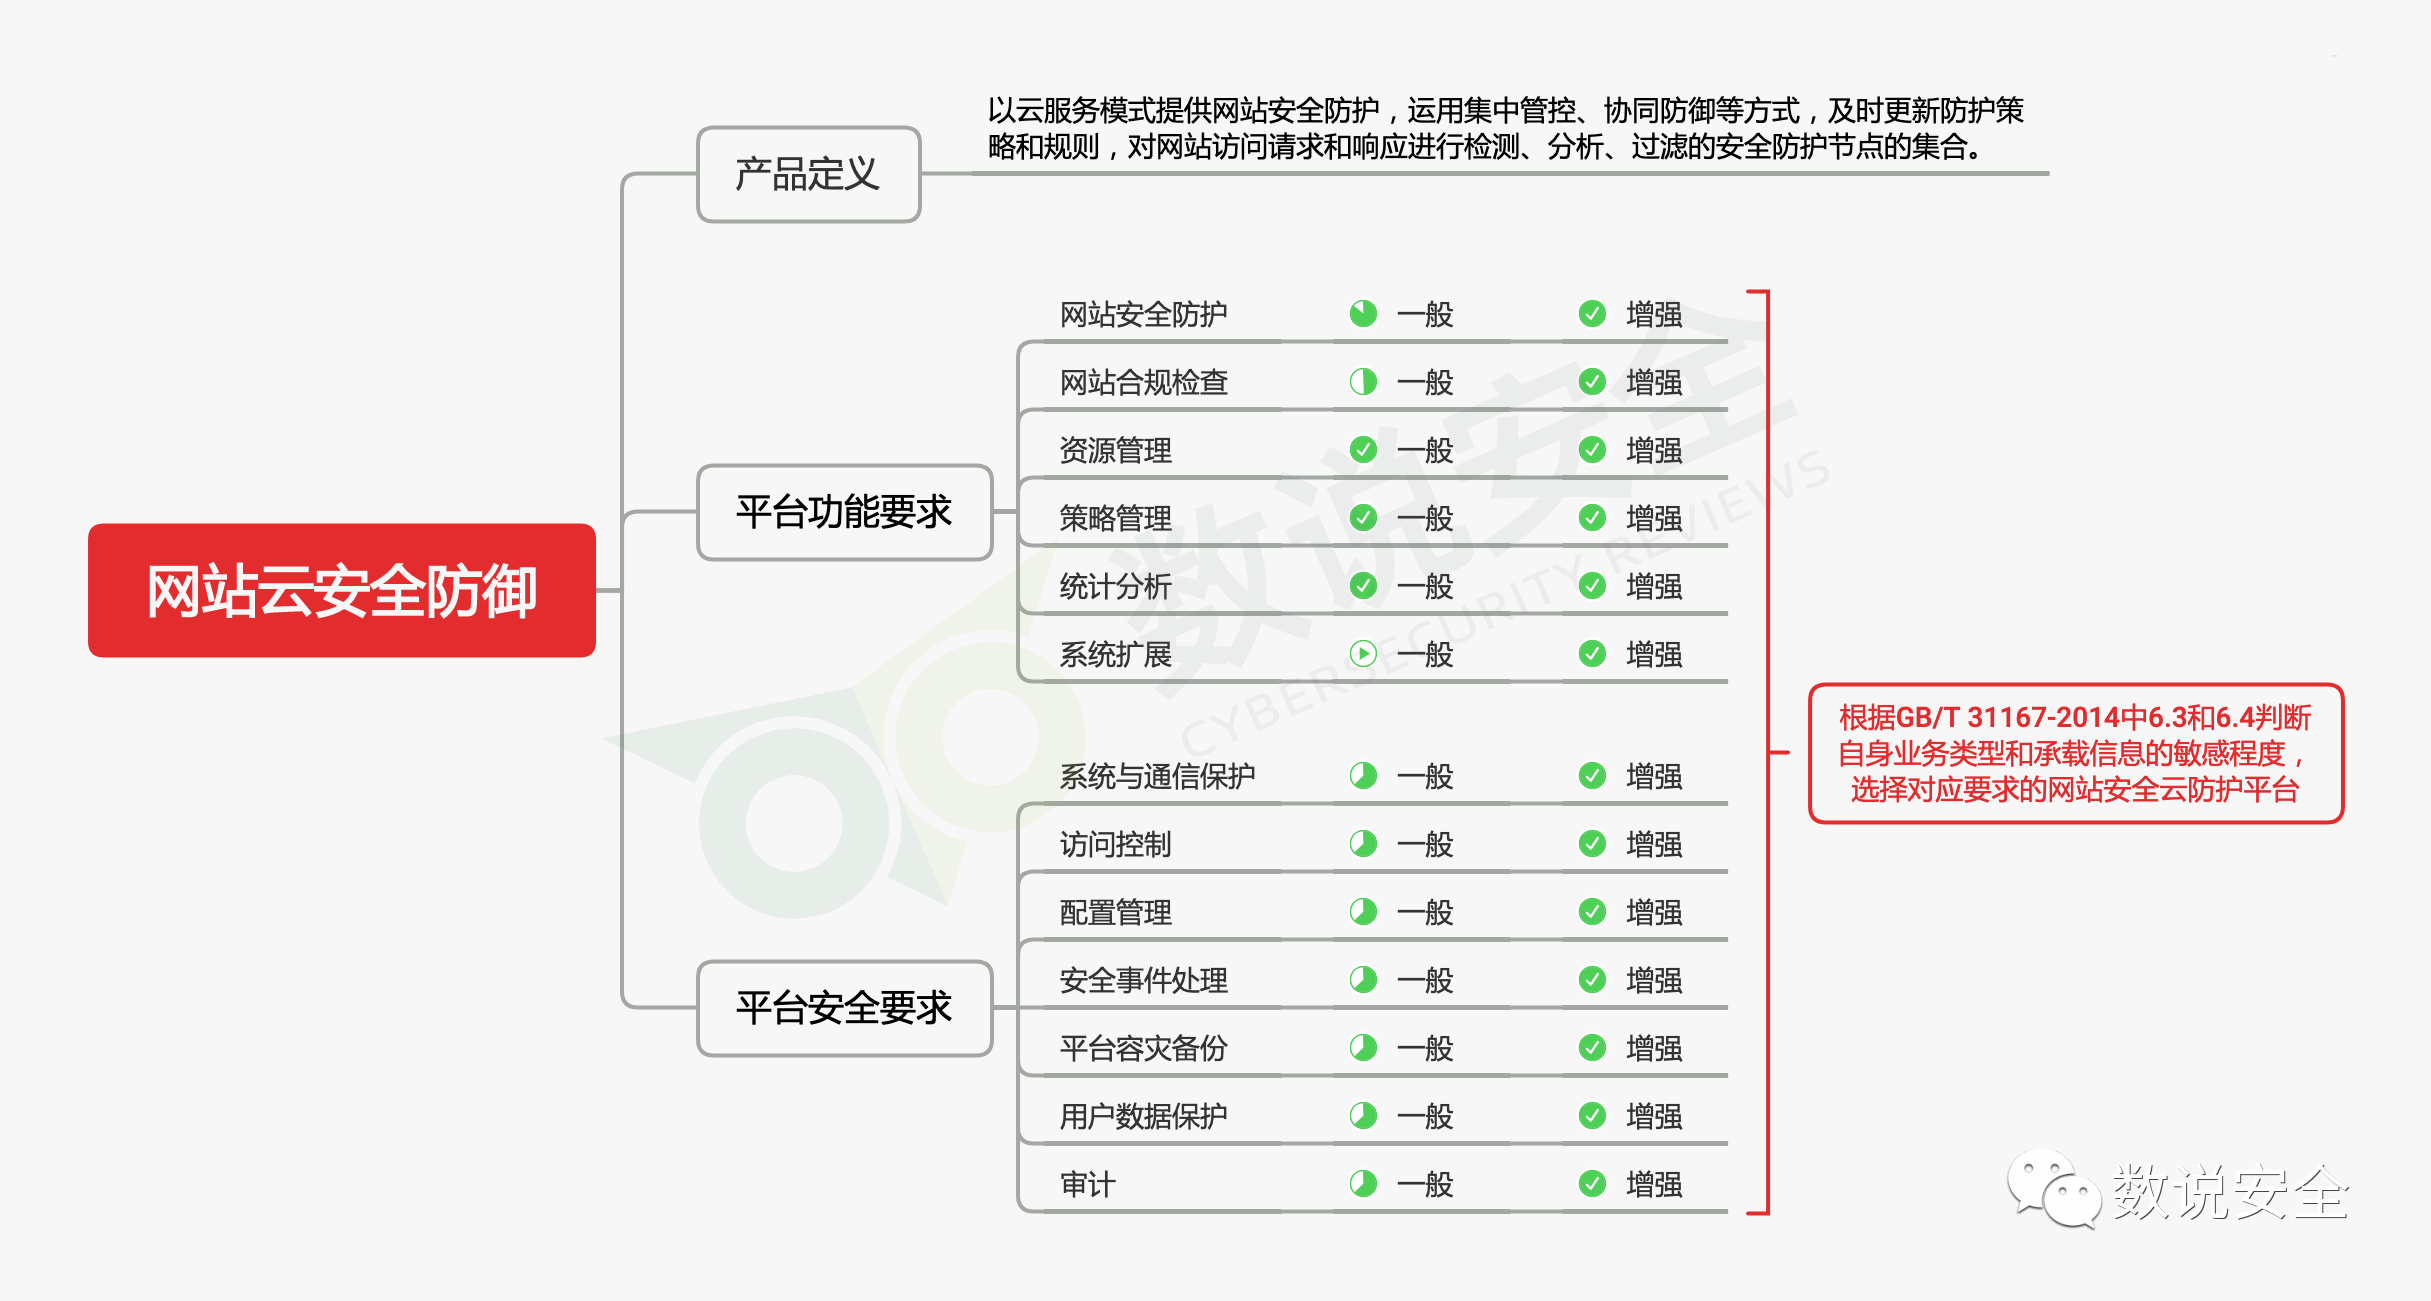 中国WEB安全市场全景图